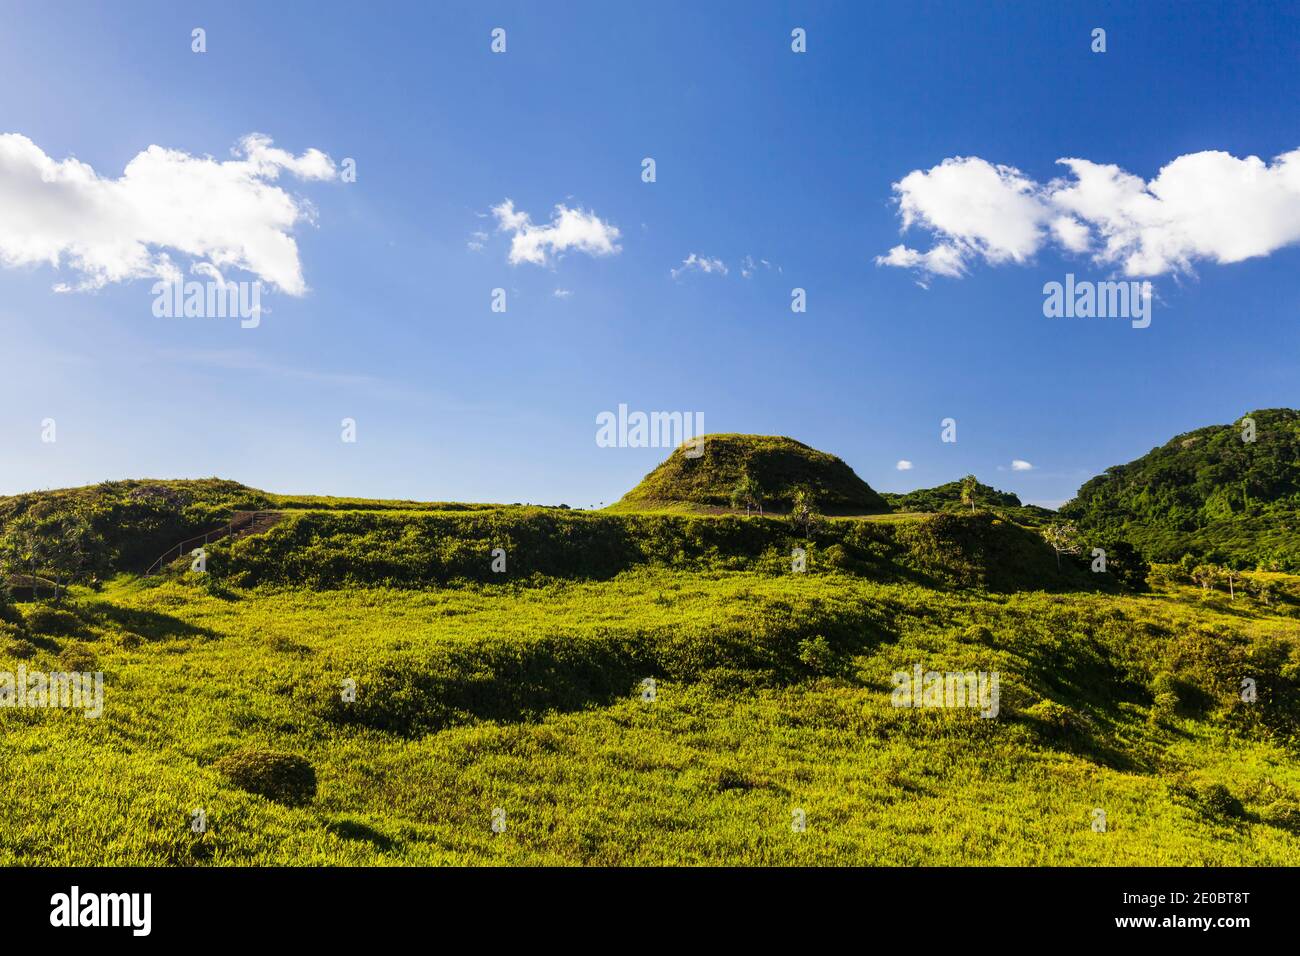 KED Ra Ngchemiangel, terrasses Kamiangel, simplement 'KED' ou 'Terrace', ancienne colline en terrasse faite par l'homme, île de Babeldaob, Palaos, Micronésie, Océanie Banque D'Images